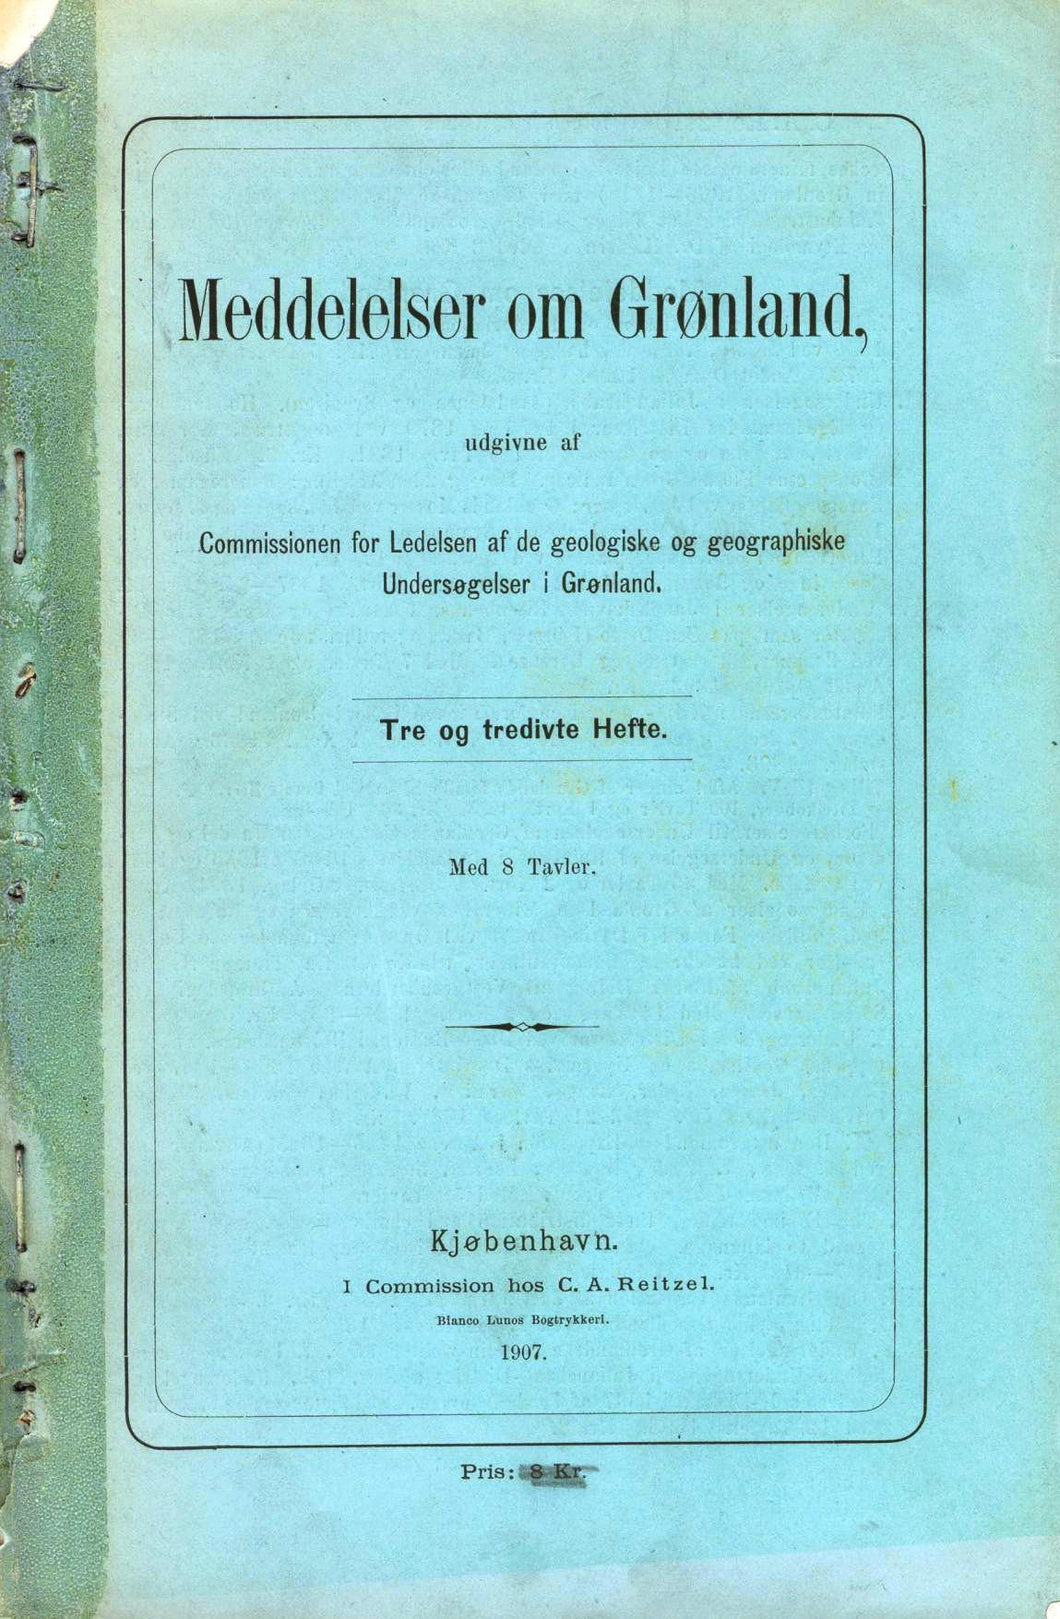 Meddelelser om Gronland Vol. 33